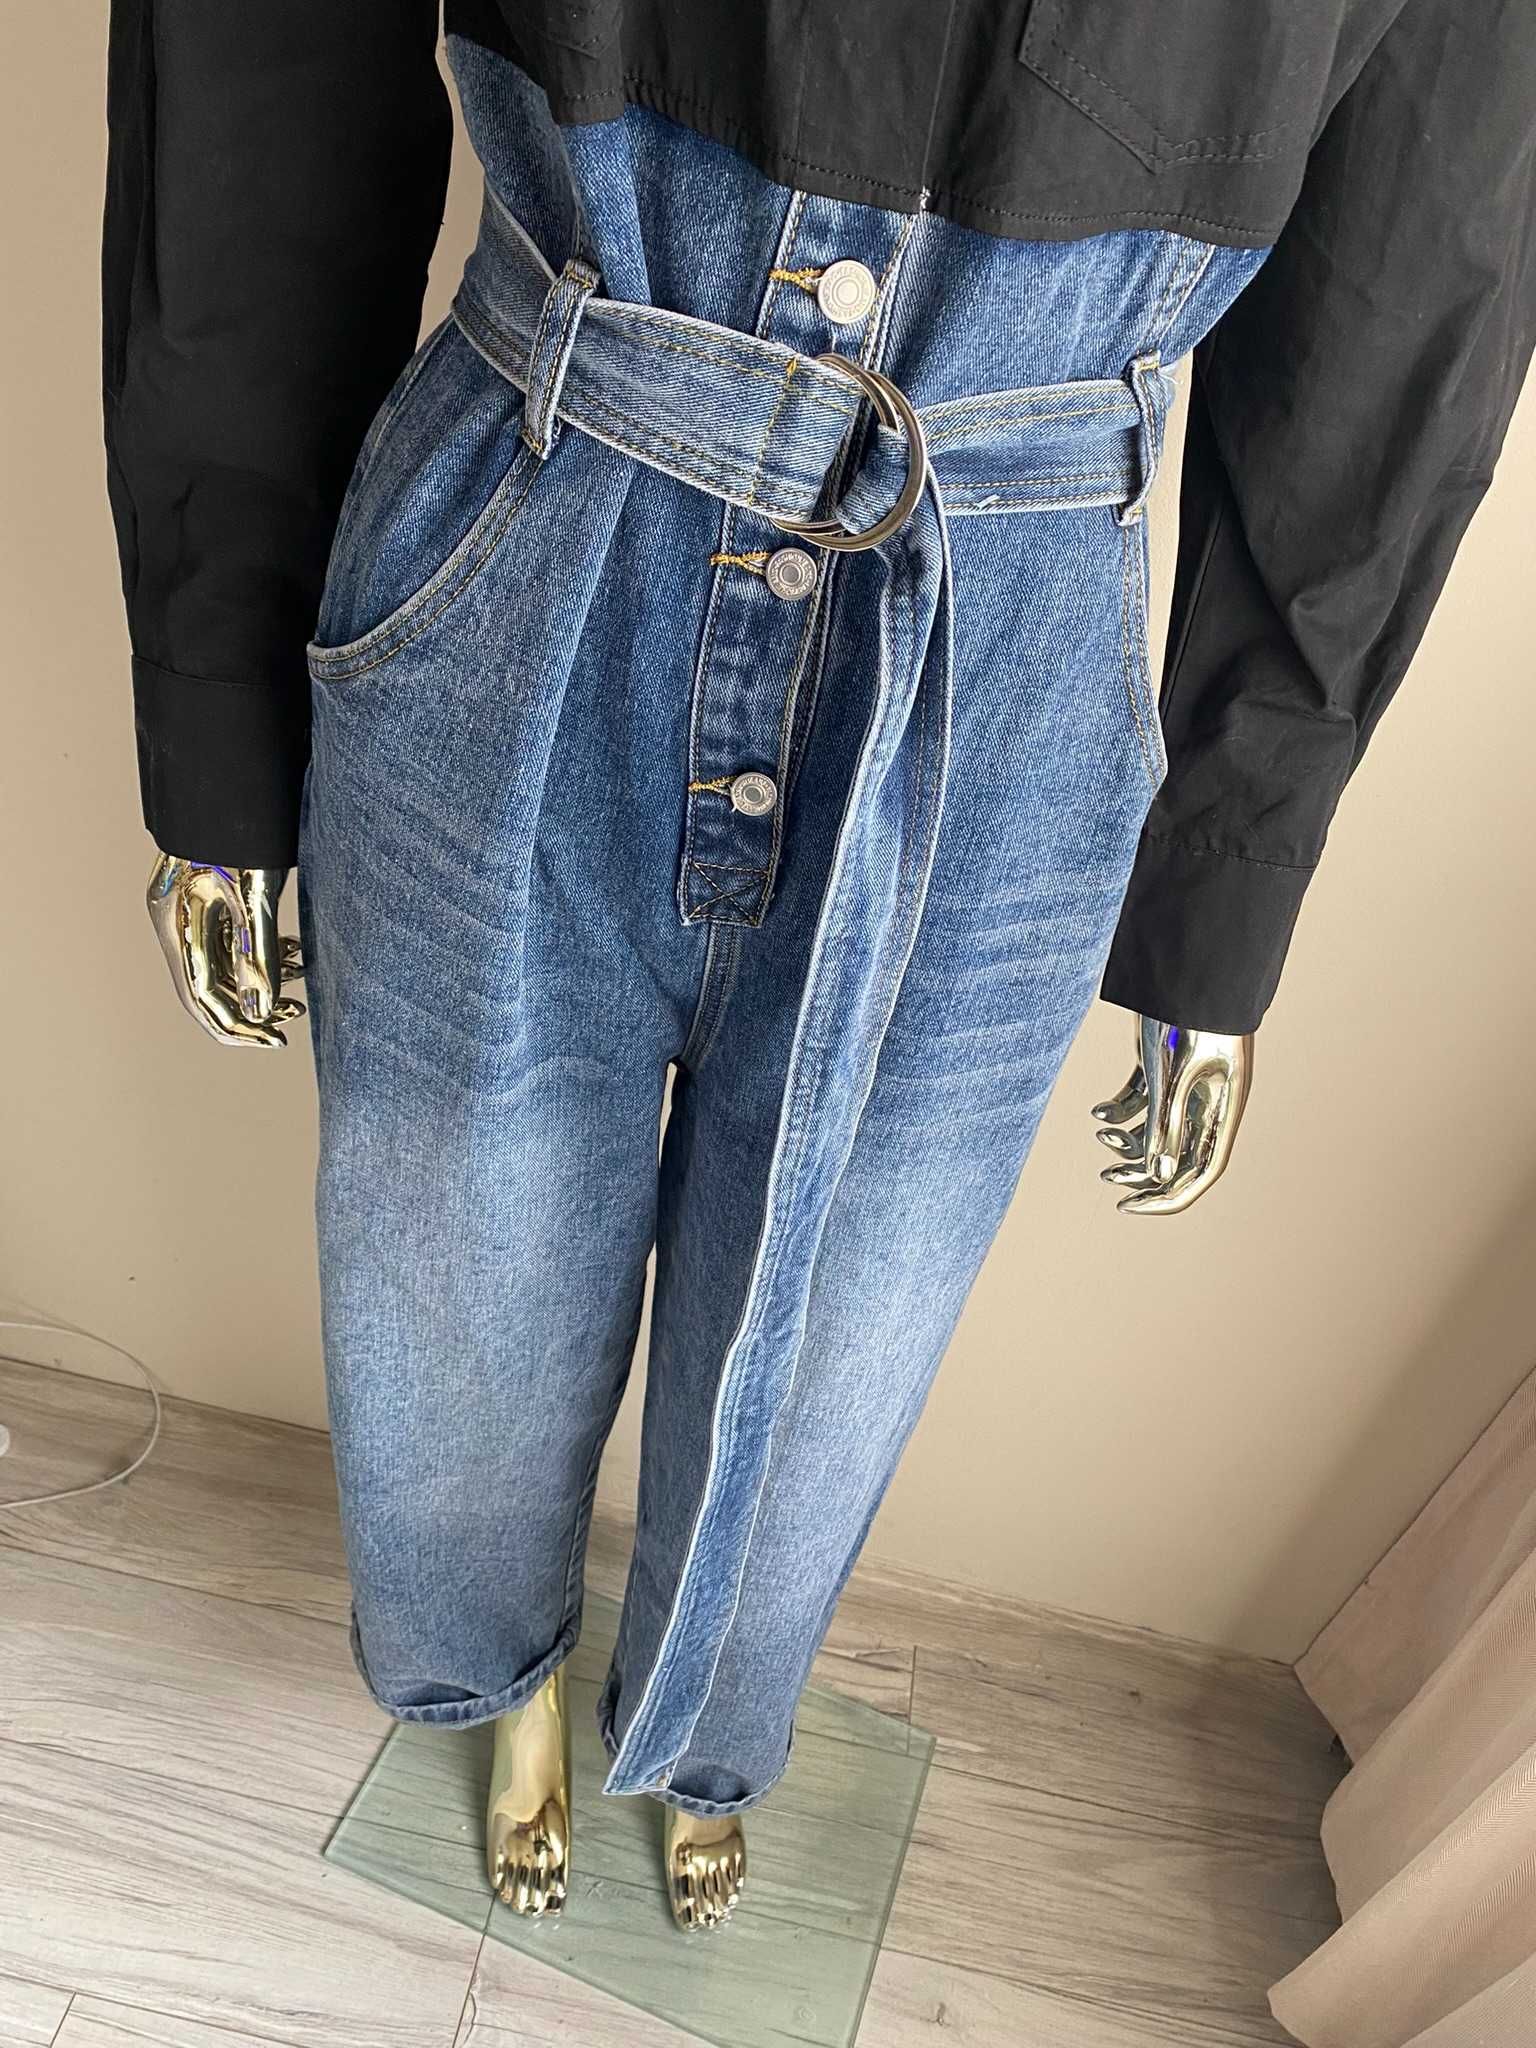 Mochy nowy kombinezon jeansowy łączony z  koszulą szeroka nogawka S-M